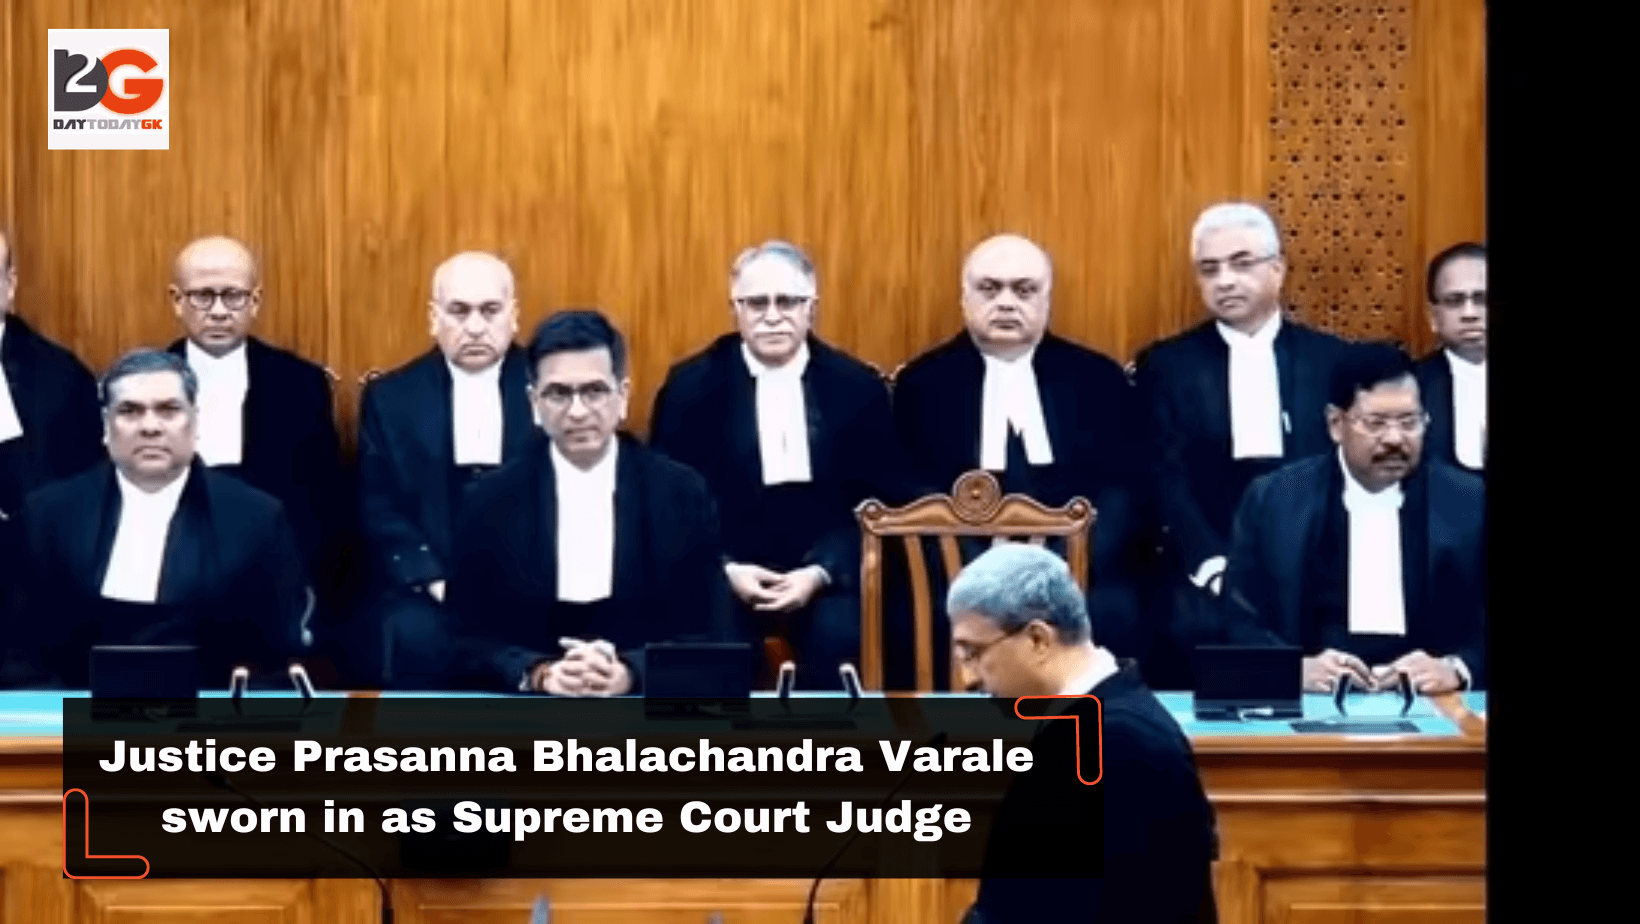 Justice Prasanna Bhalachandra Varale sworn in as Supreme Court Judge